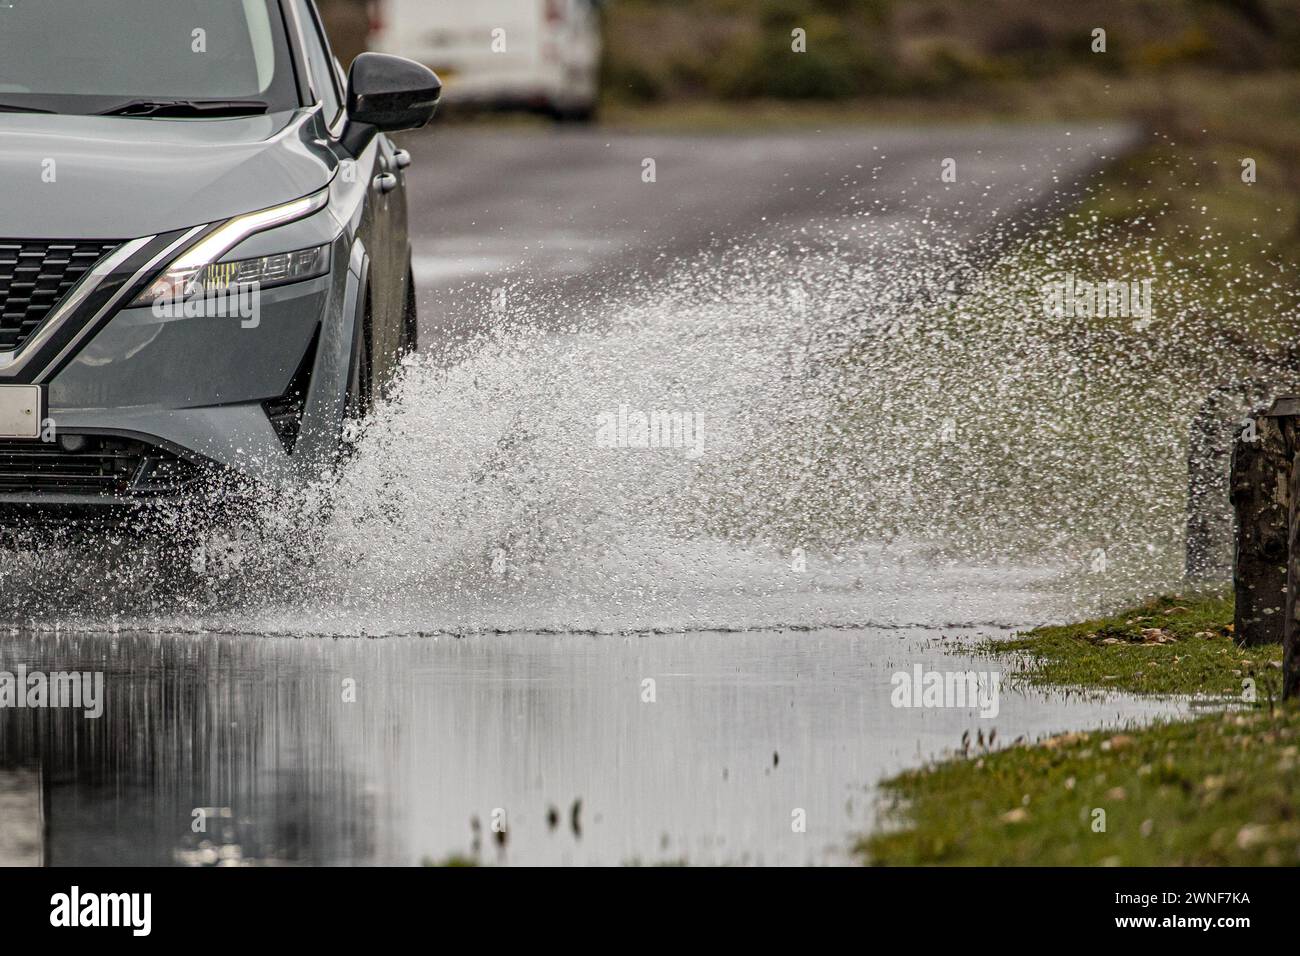 Spruzzi d'acqua dalla ruota di un'auto e dalla parte anteriore dell'auto mentre percorre una strada allagata Foto Stock